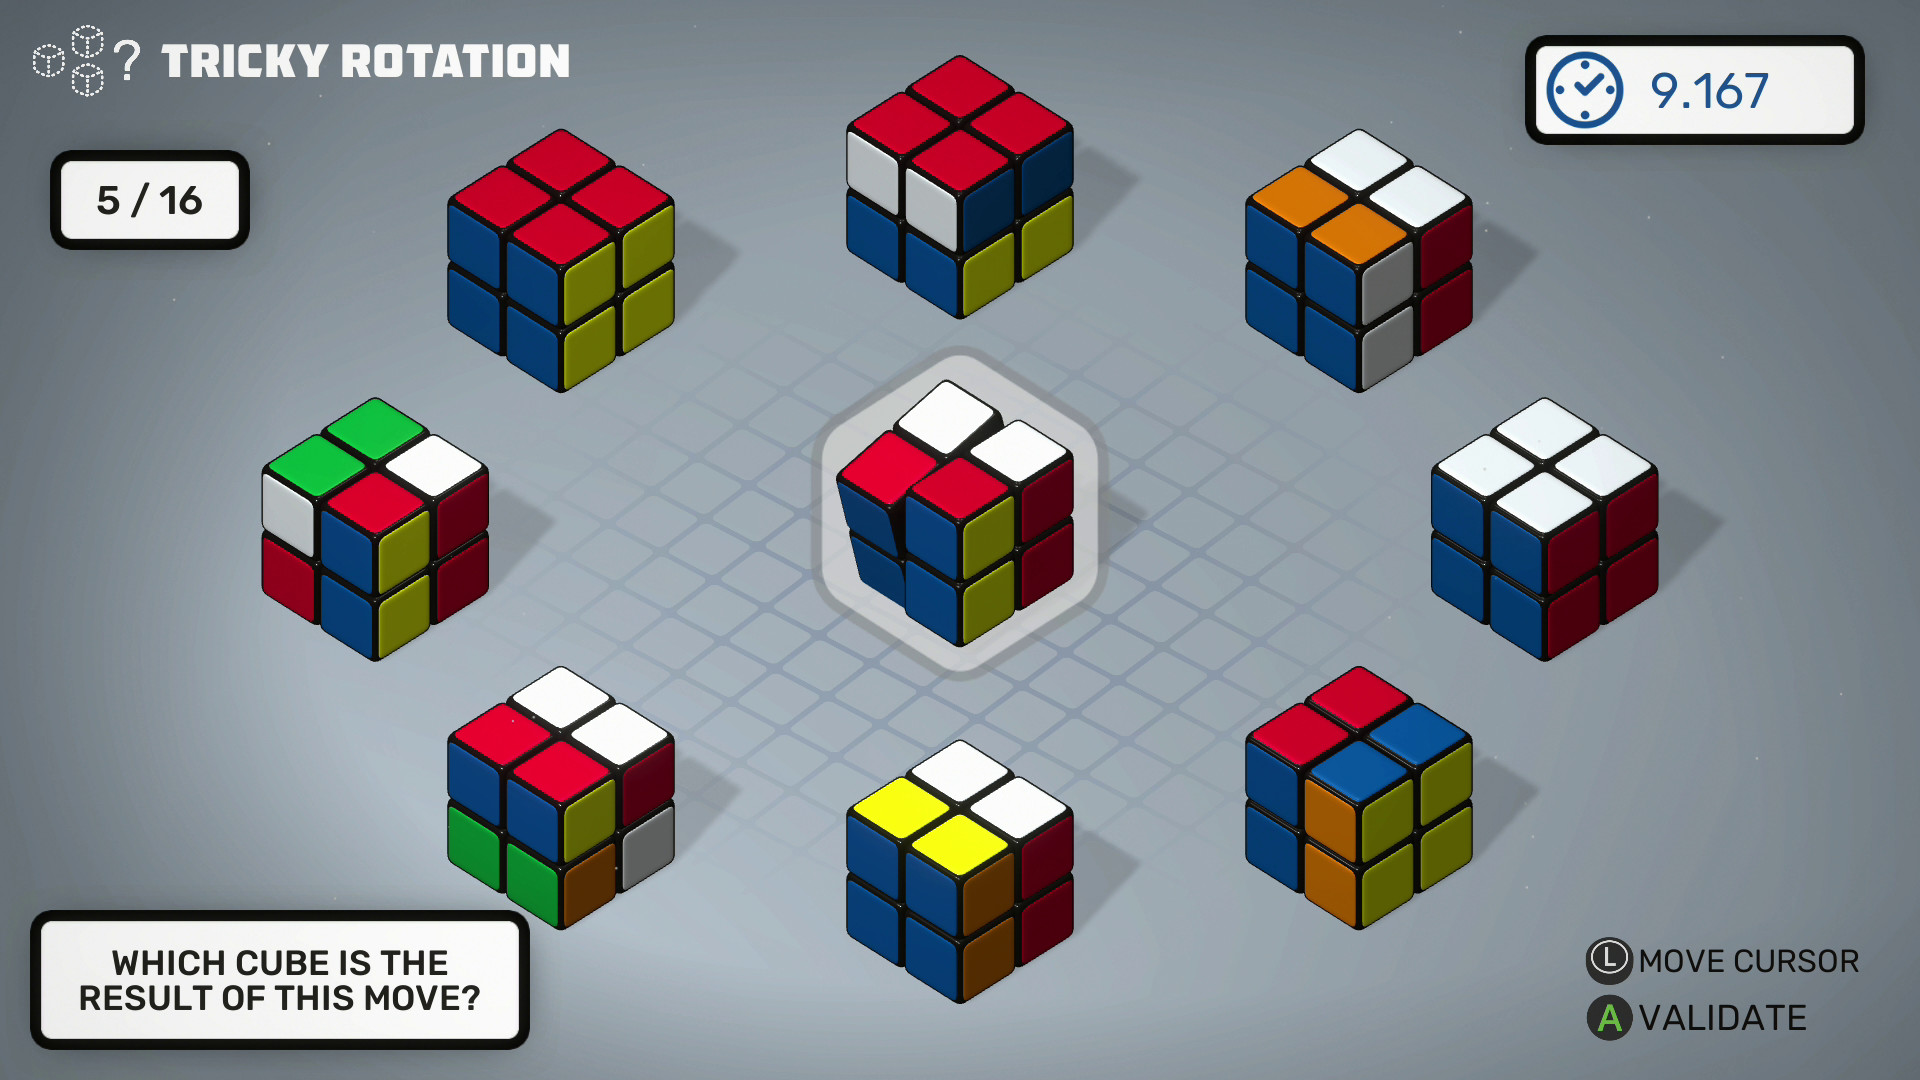 Professor Rubik’s Brain Fitness | WW (5c684a1d-2790-4788-8755-6bd698554280)